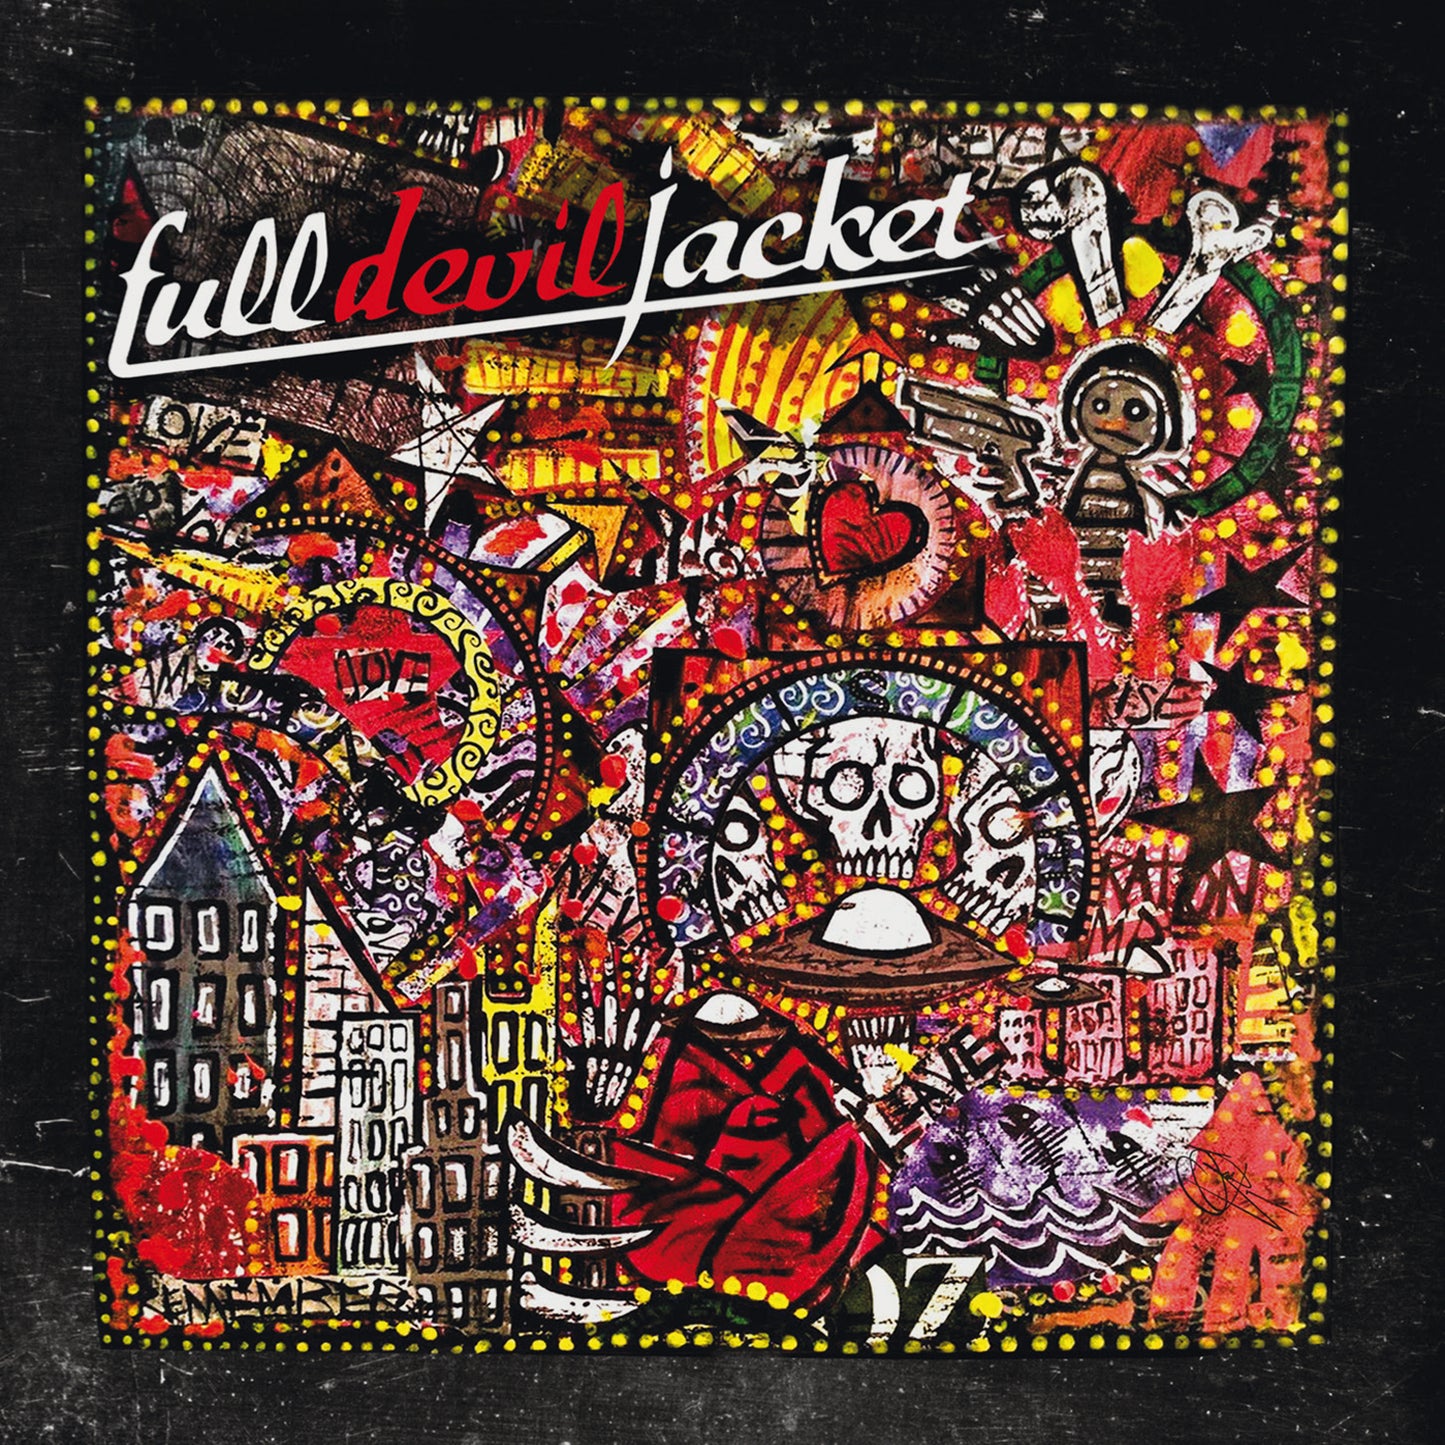 Full Devil Jacket "Valley Of Bones" CD